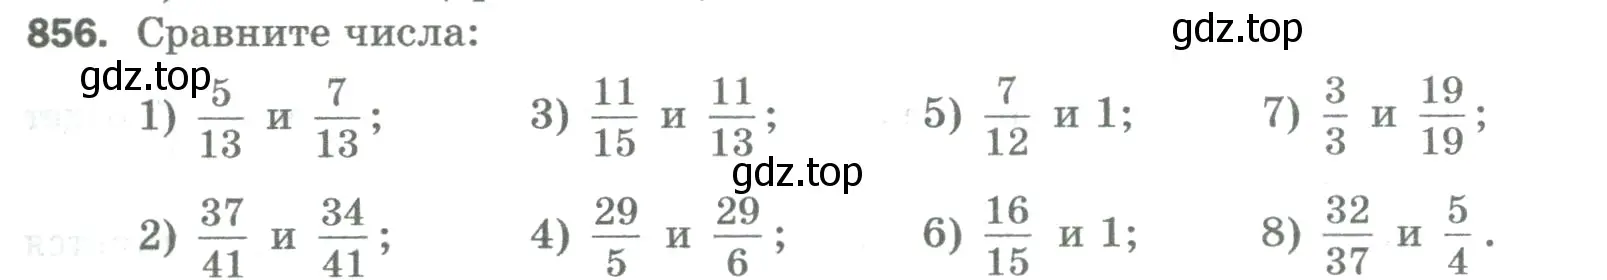 Условие номер 856 (страница 197) гдз по математике 5 класс Мерзляк, Полонский, учебник